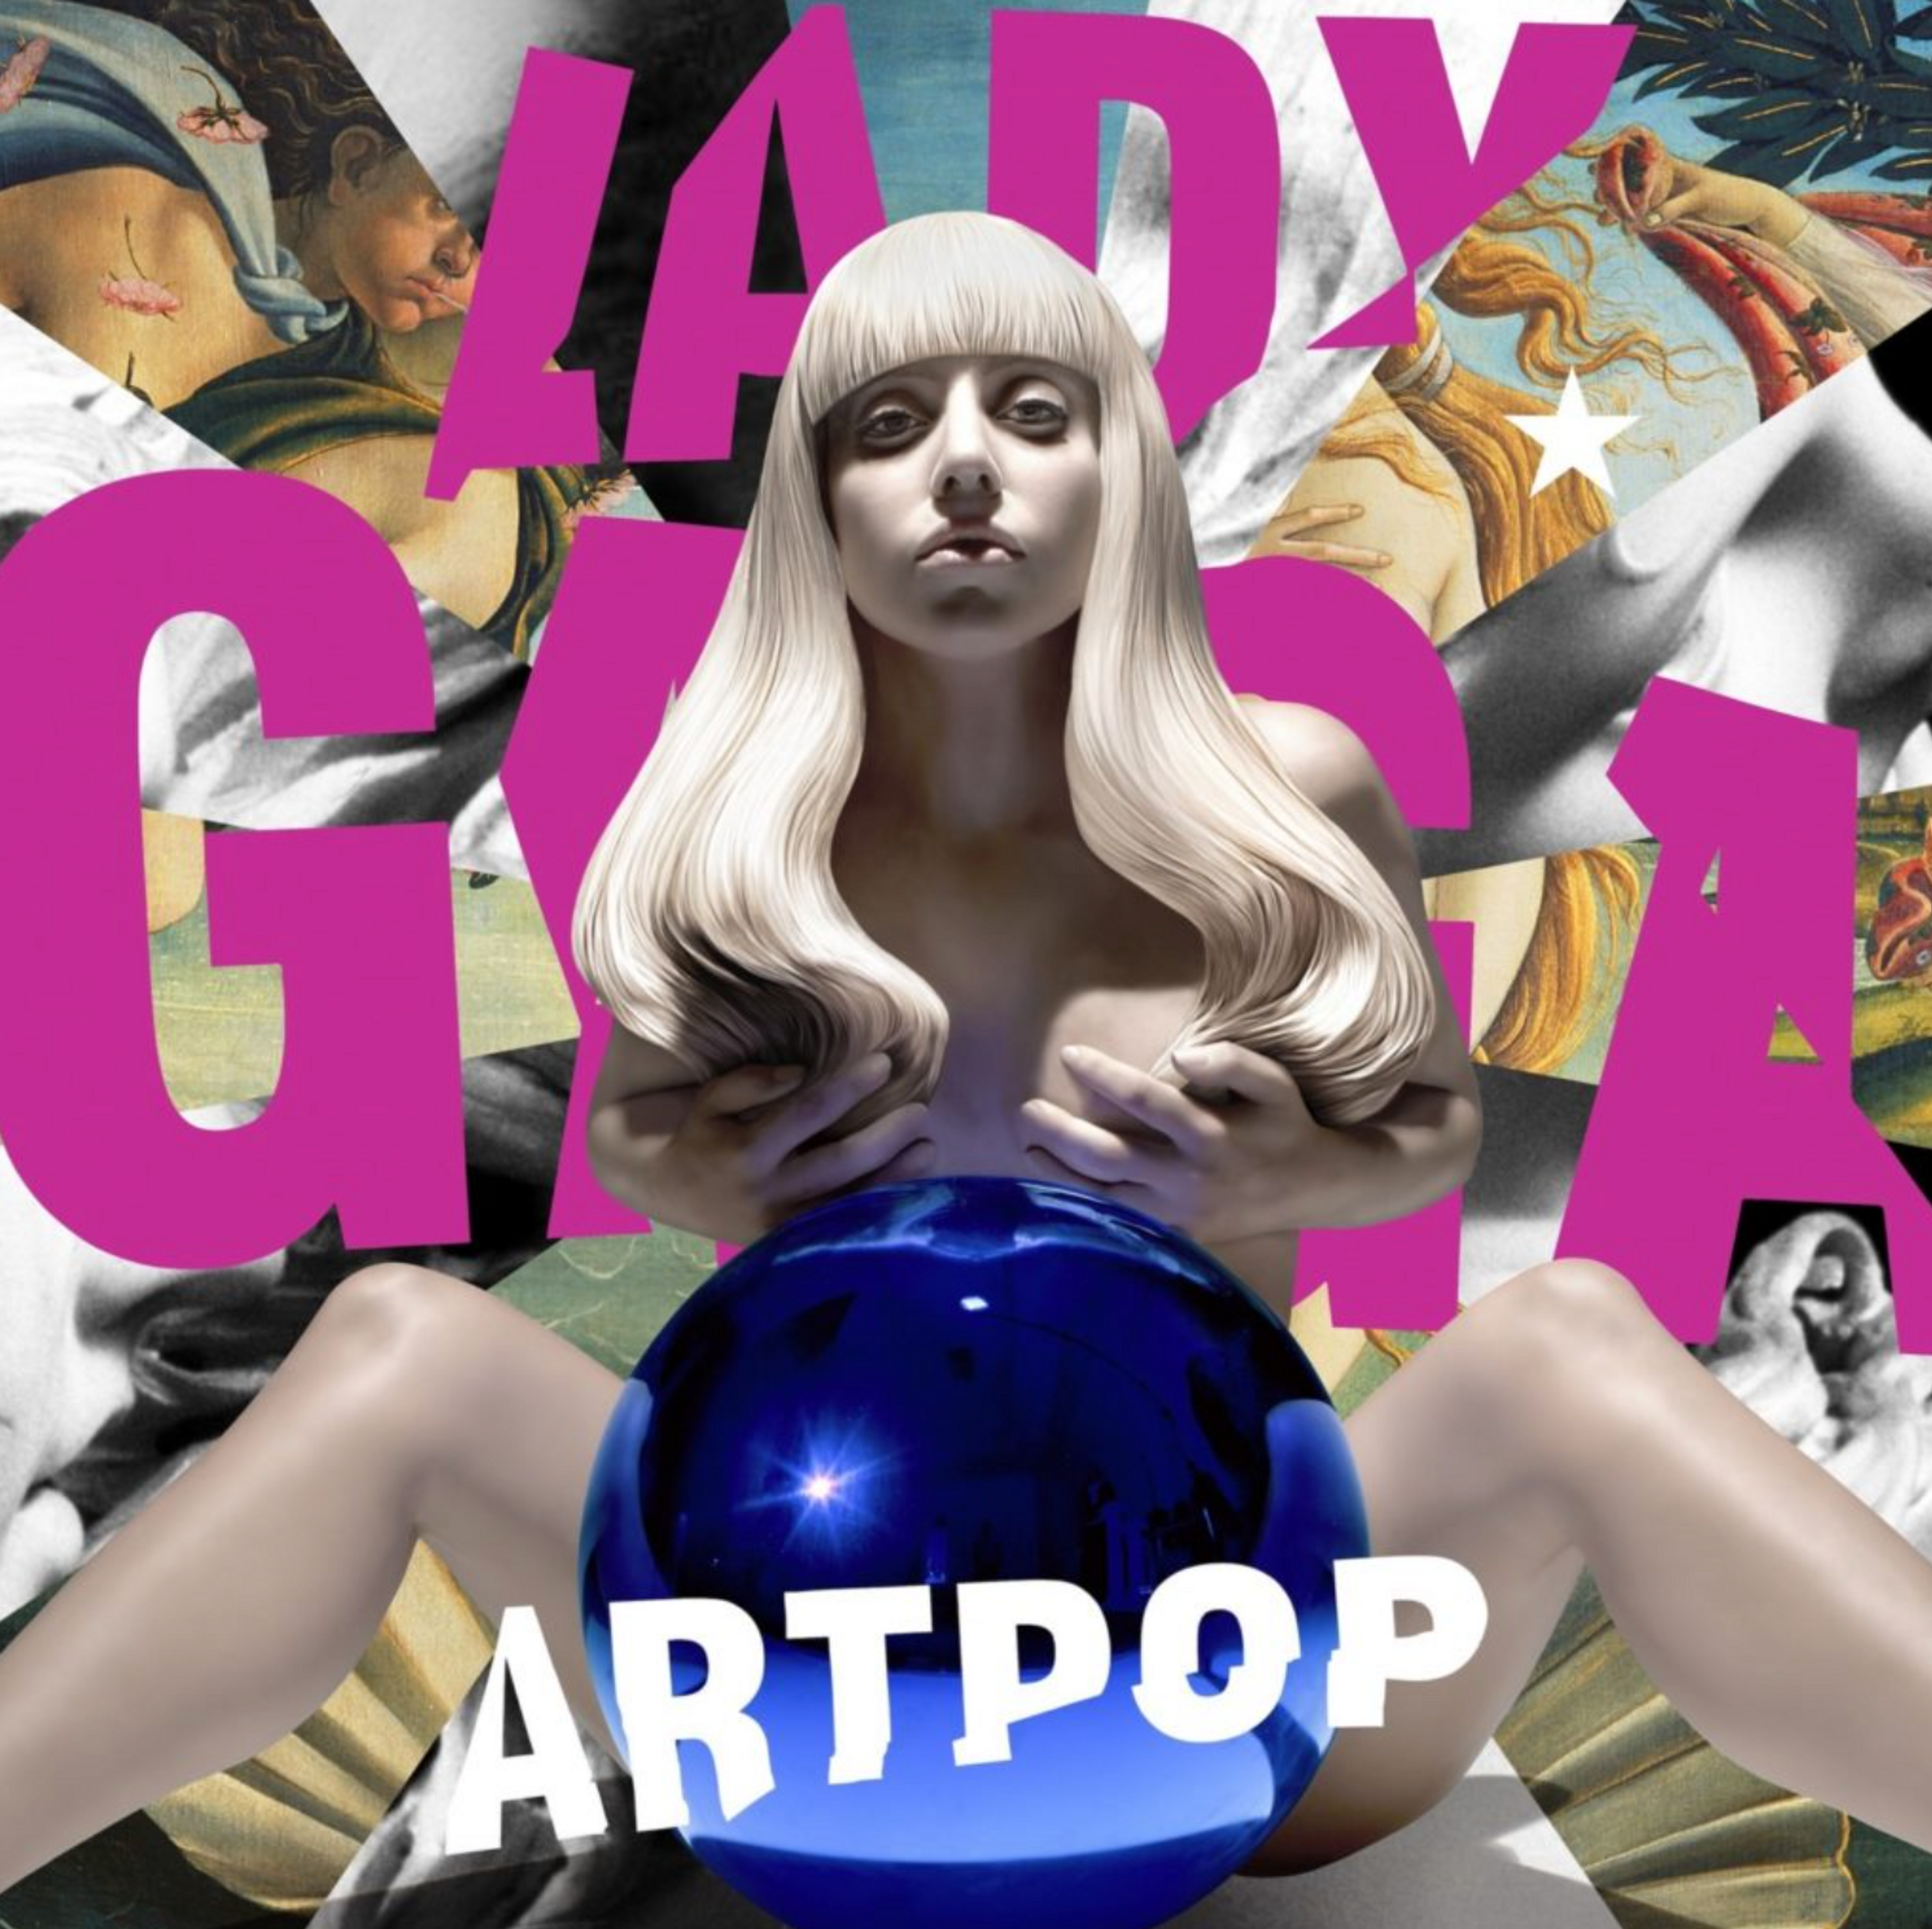 ARTPOP by Lady Gaga